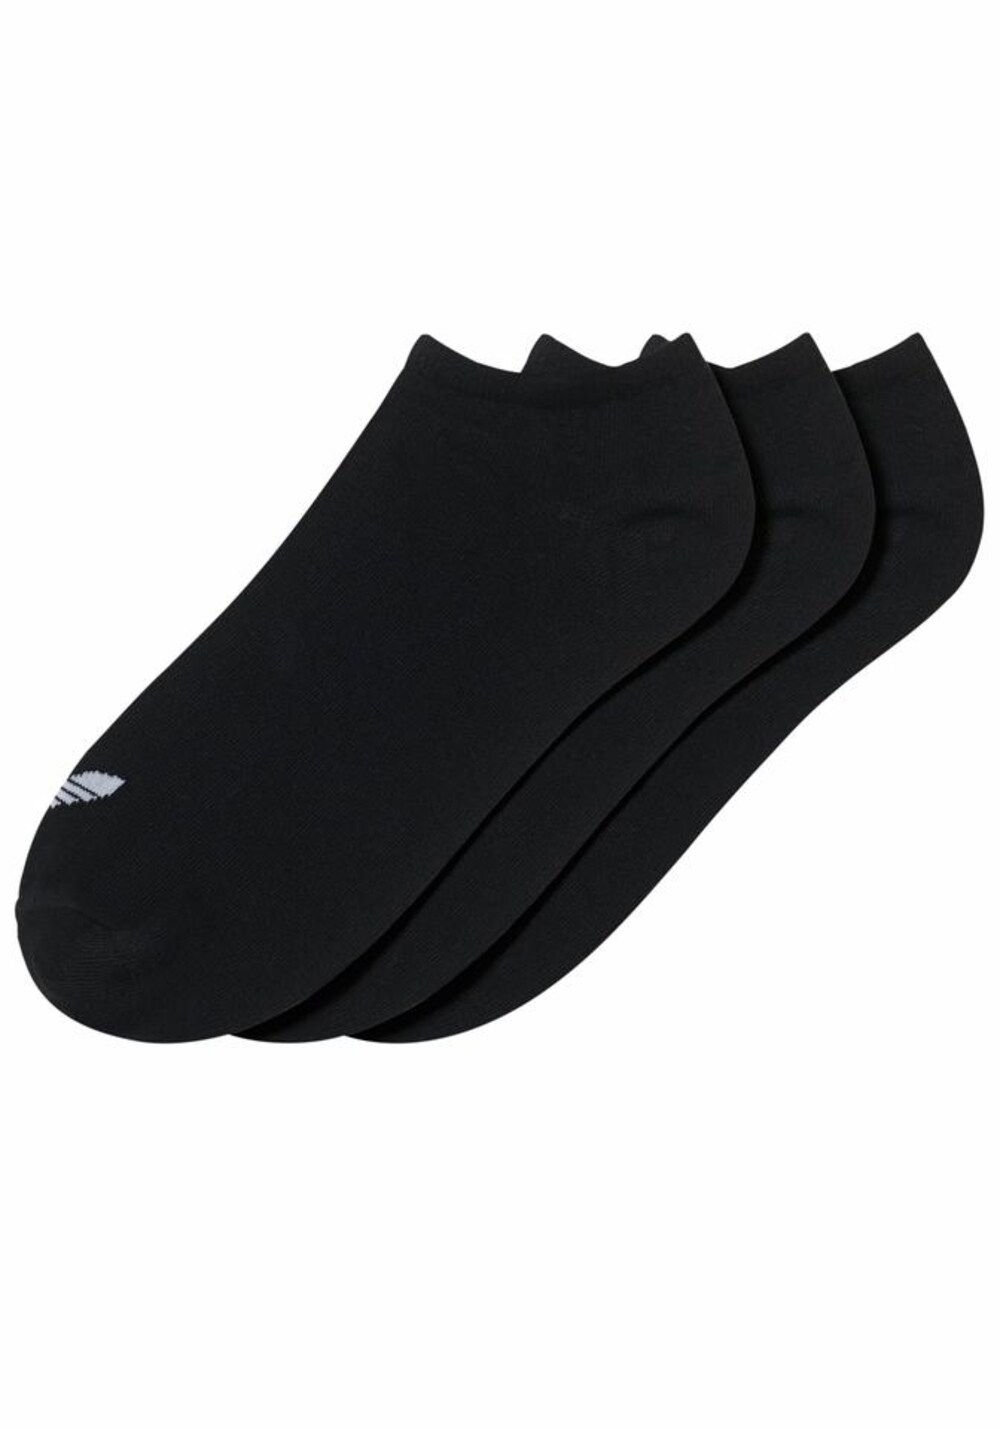 Носки до щиколотки Adidas Trefoil Liner, черный